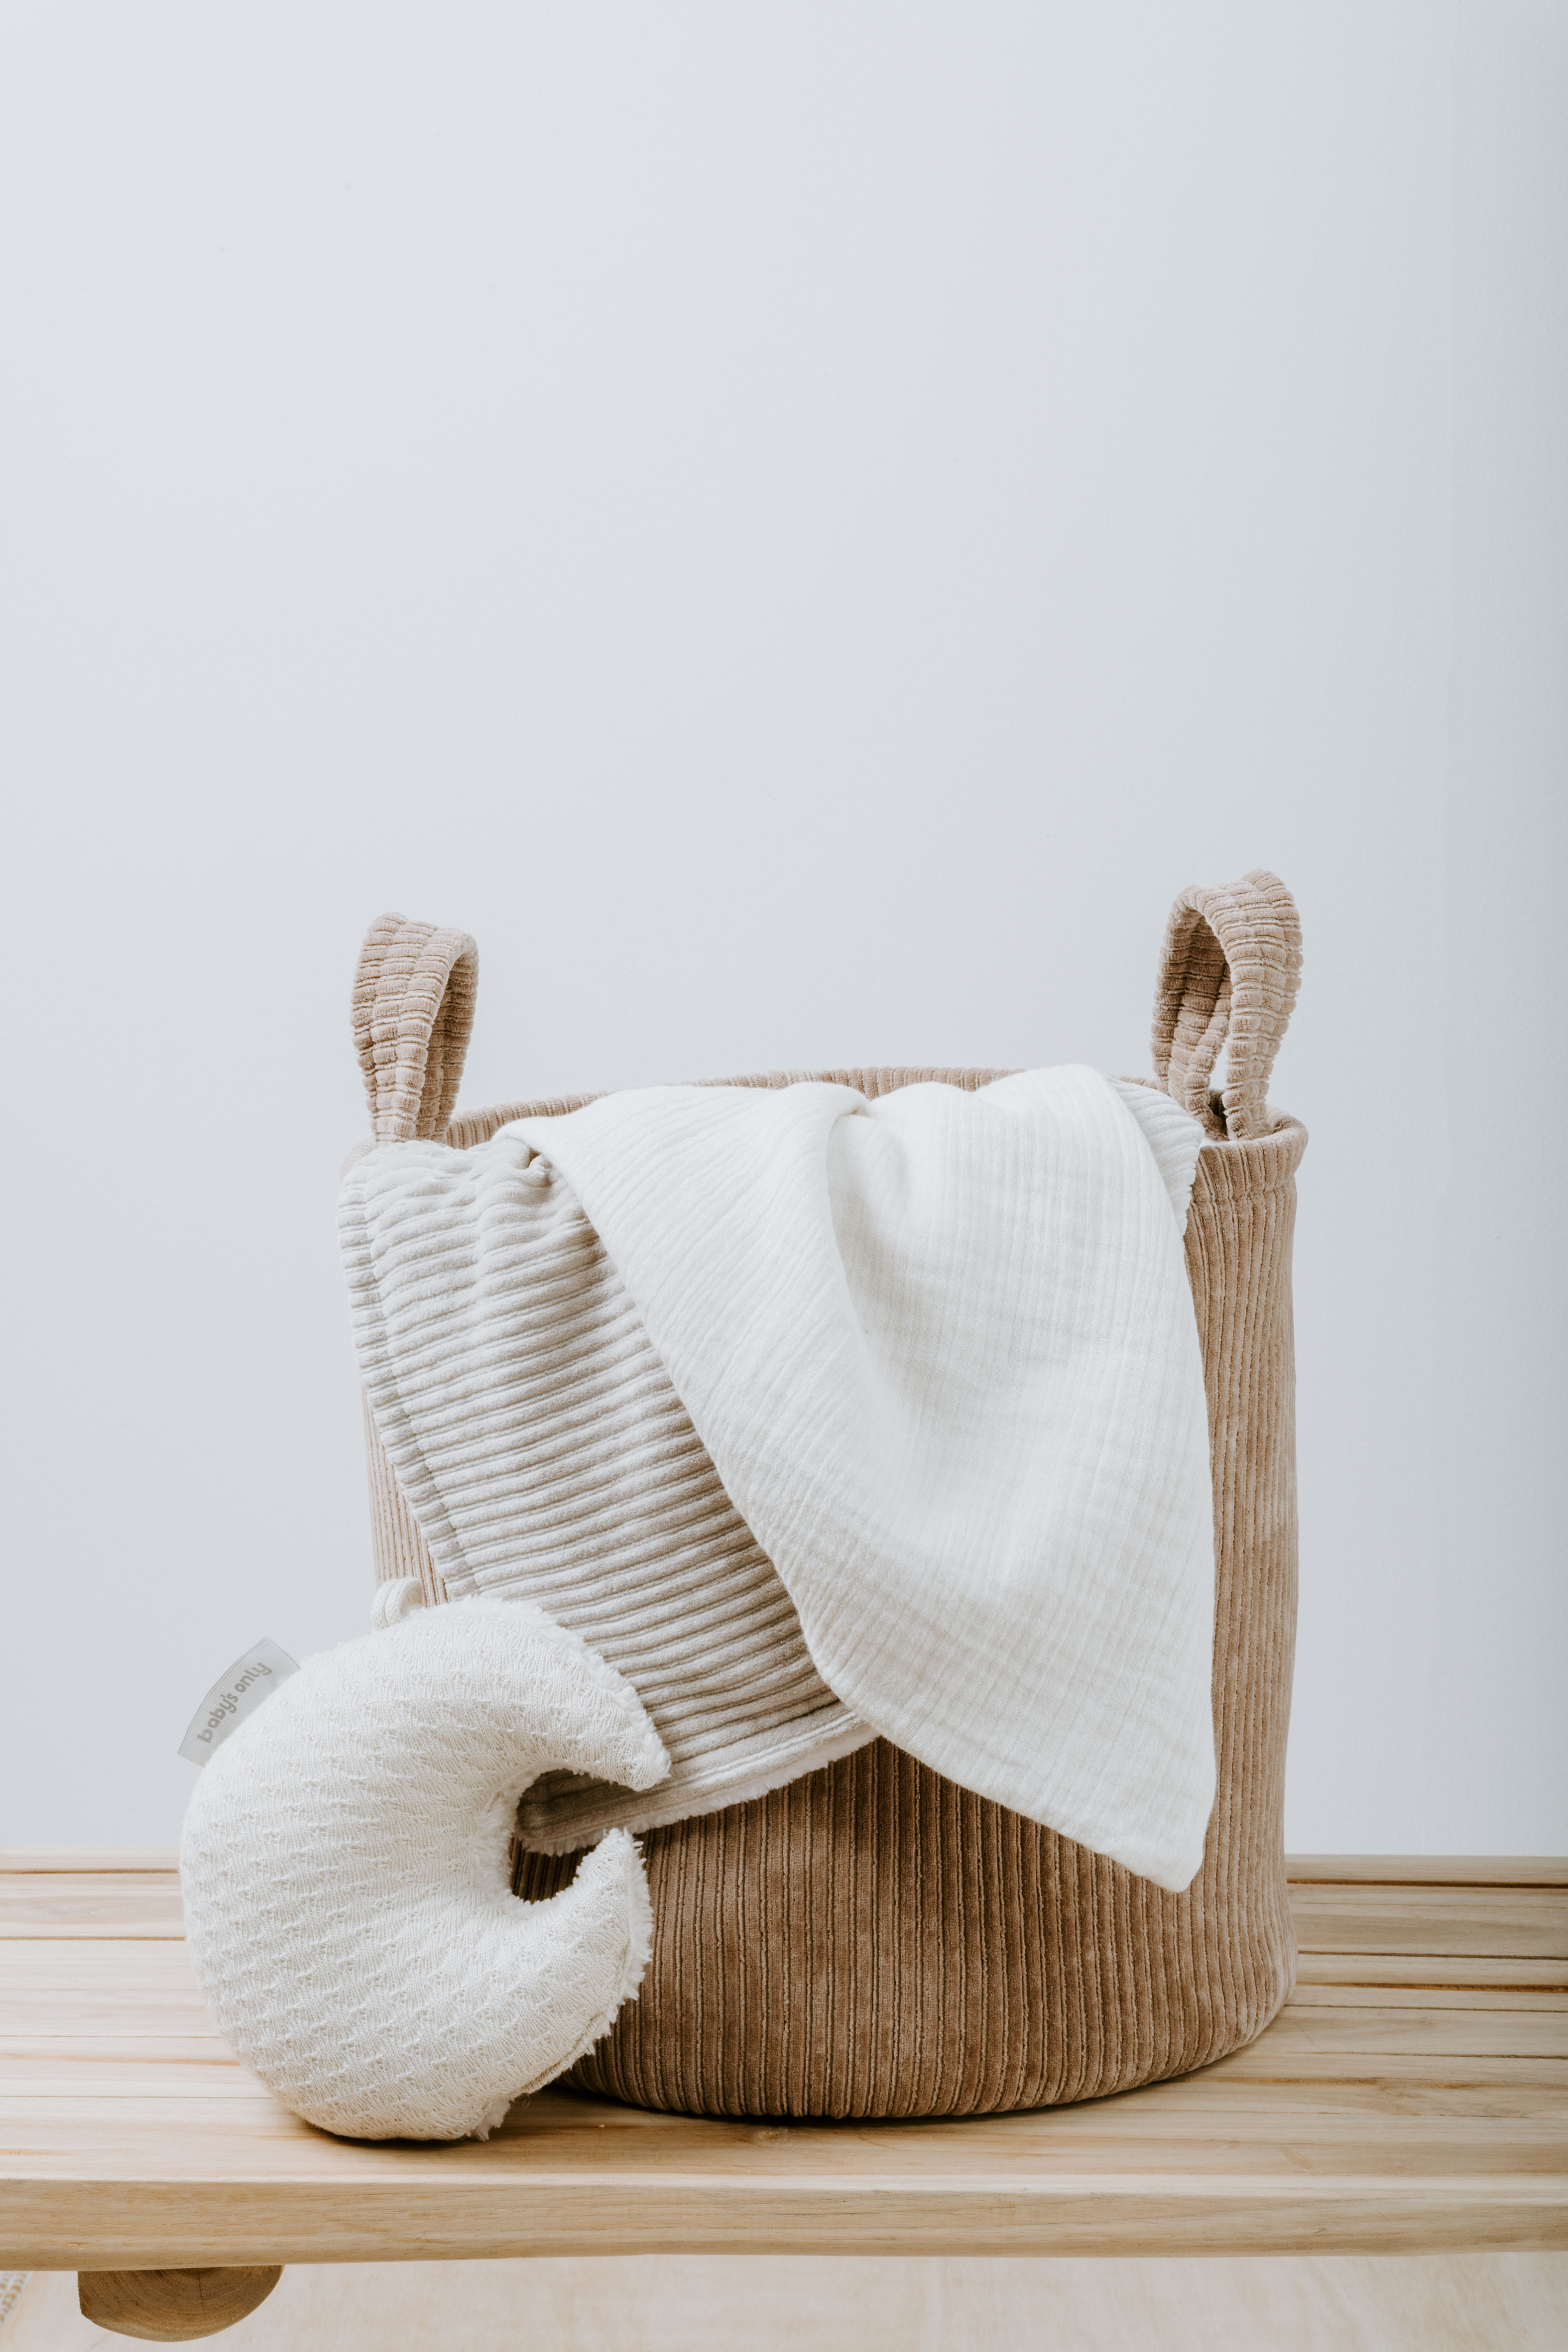 Storage basket Sense white - Ø30 cm